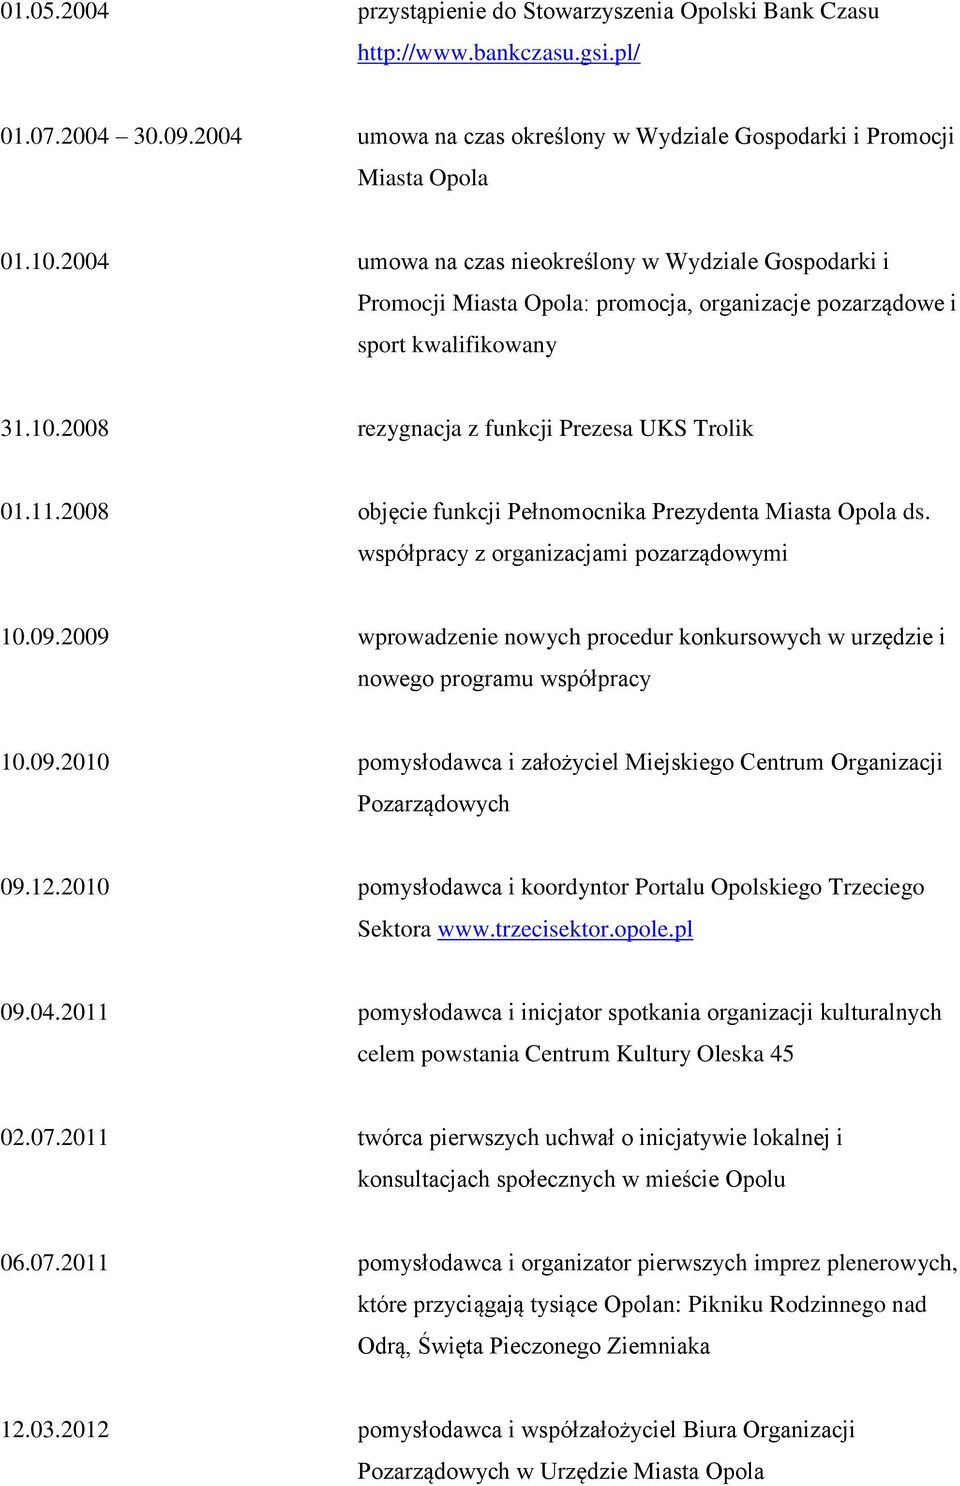 2008 objęcie funkcji Pełnomocnika Prezydenta Miasta Opola ds. współpracy z organizacjami pozarządowymi 10.09.2009 wprowadzenie nowych procedur konkursowych w urzędzie i nowego programu współpracy 10.